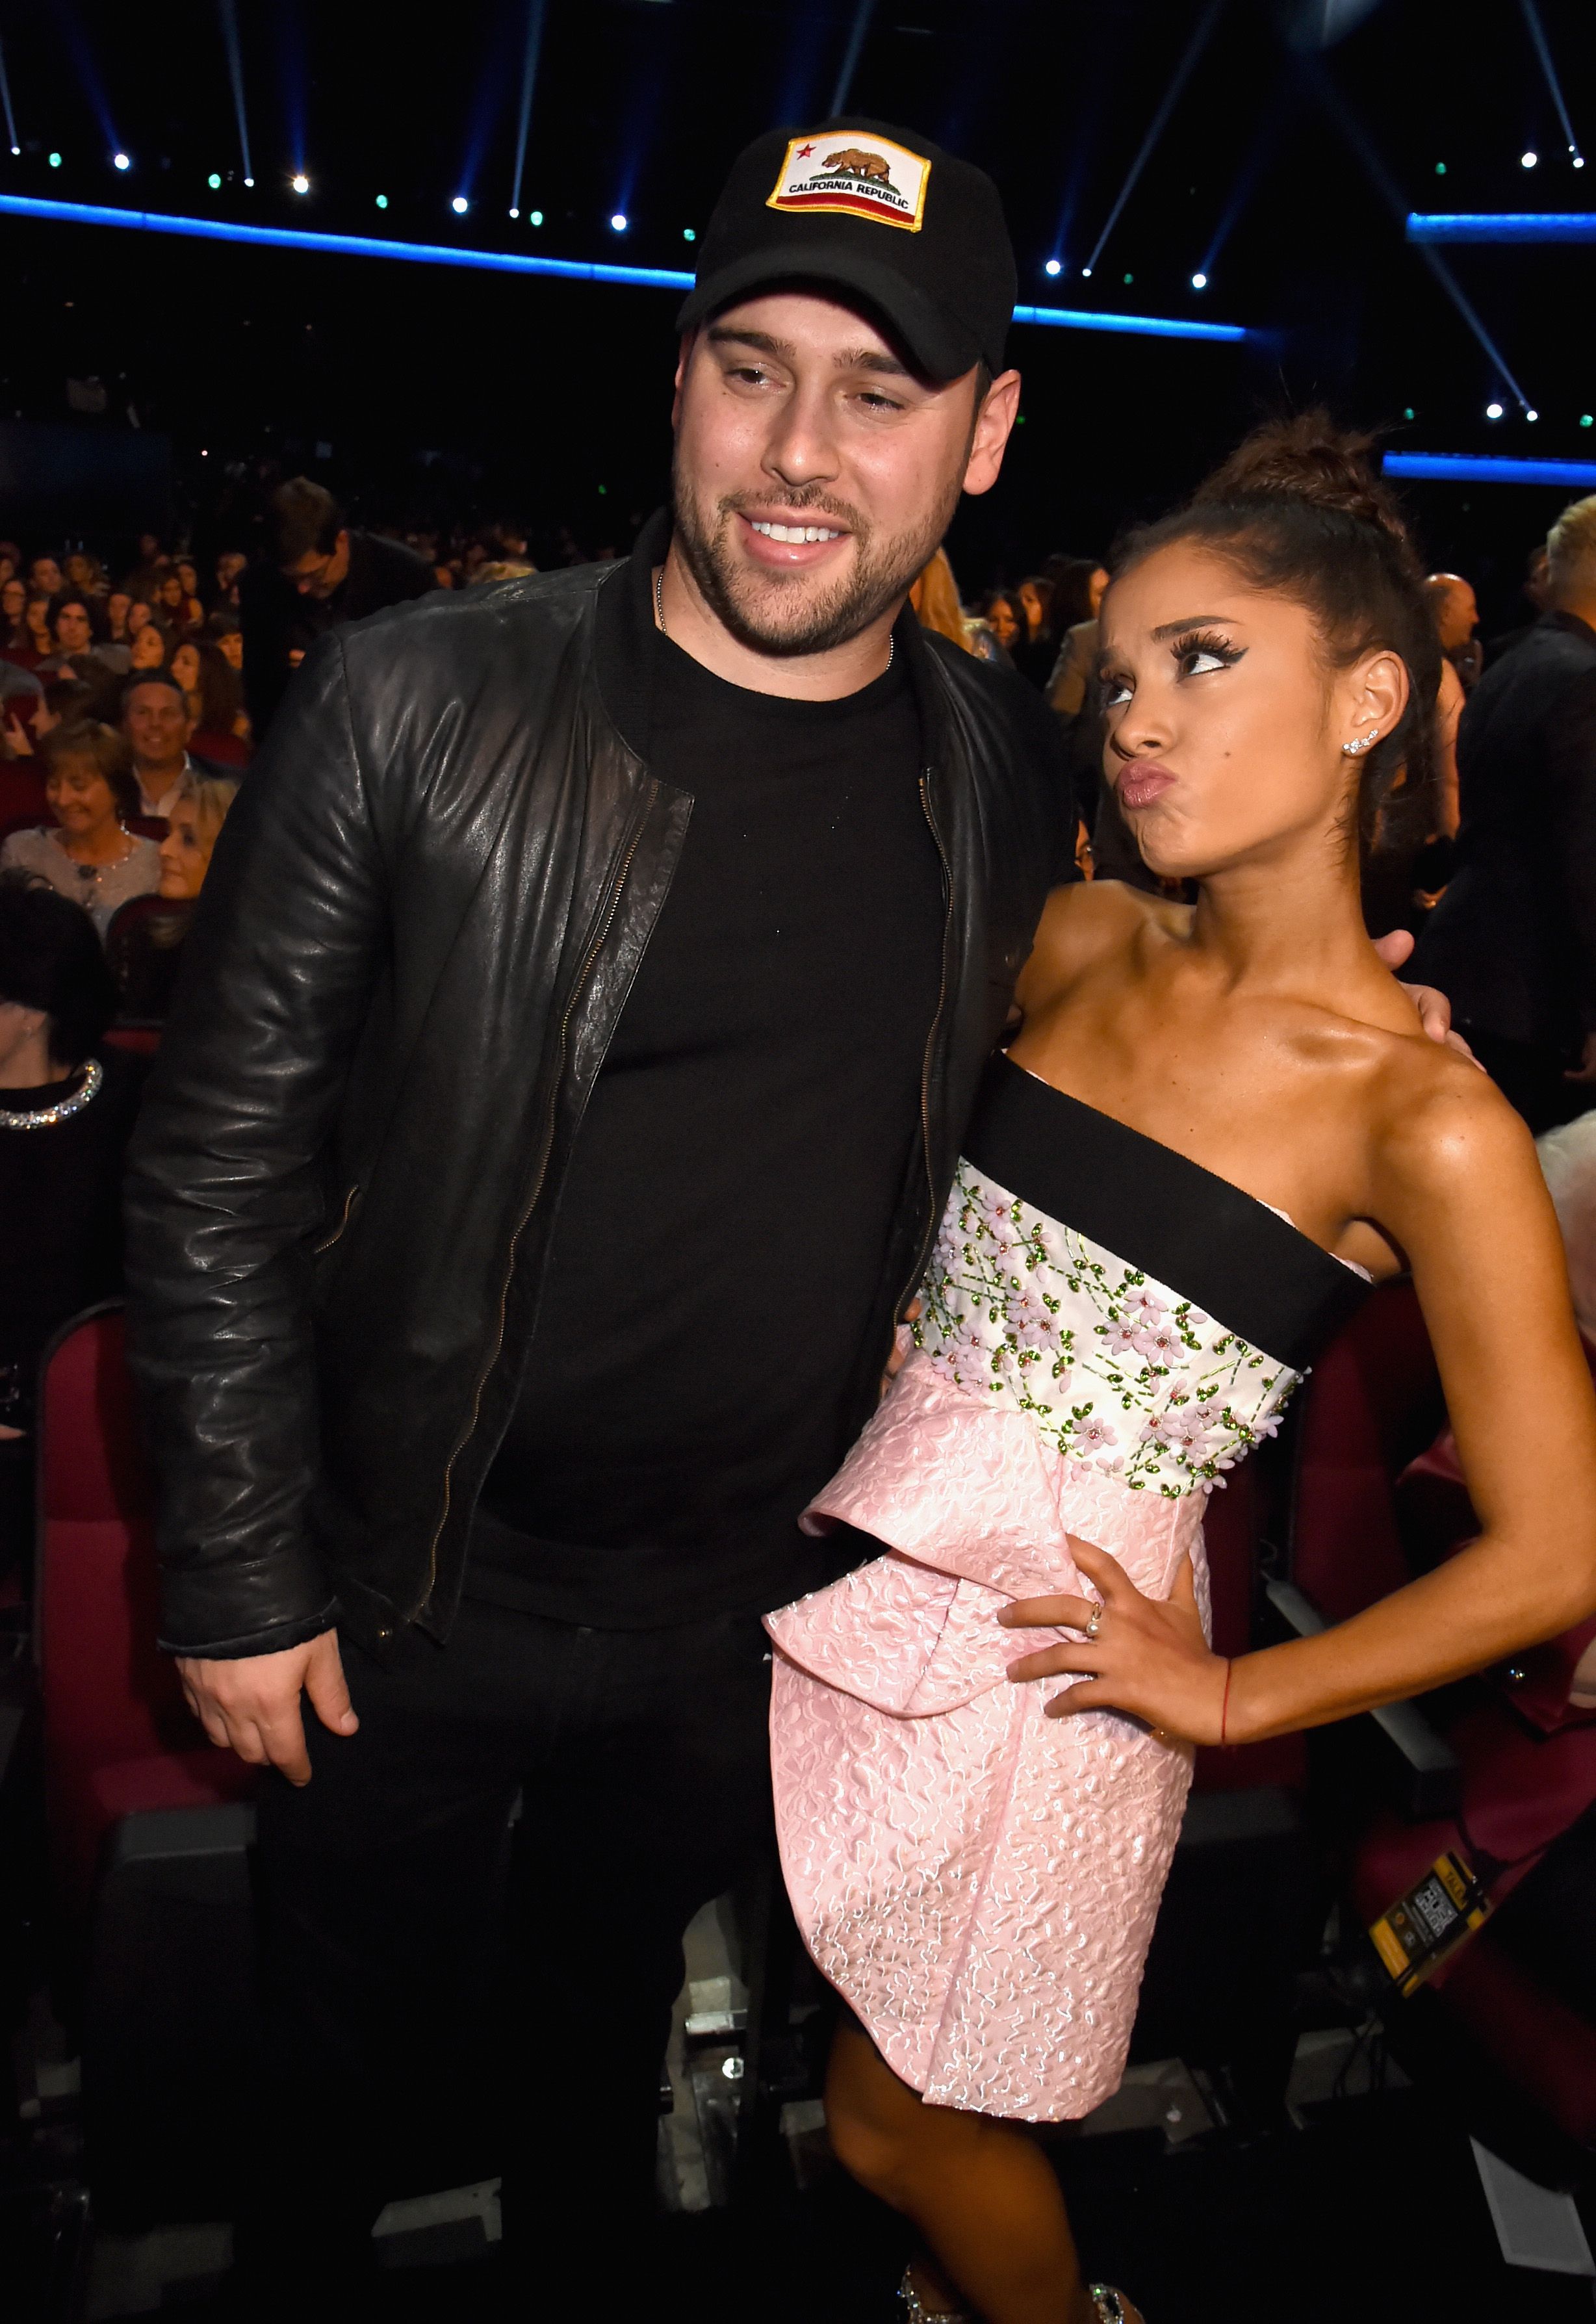 Ariana Grande's Manager Braun About Boyfriend Impact